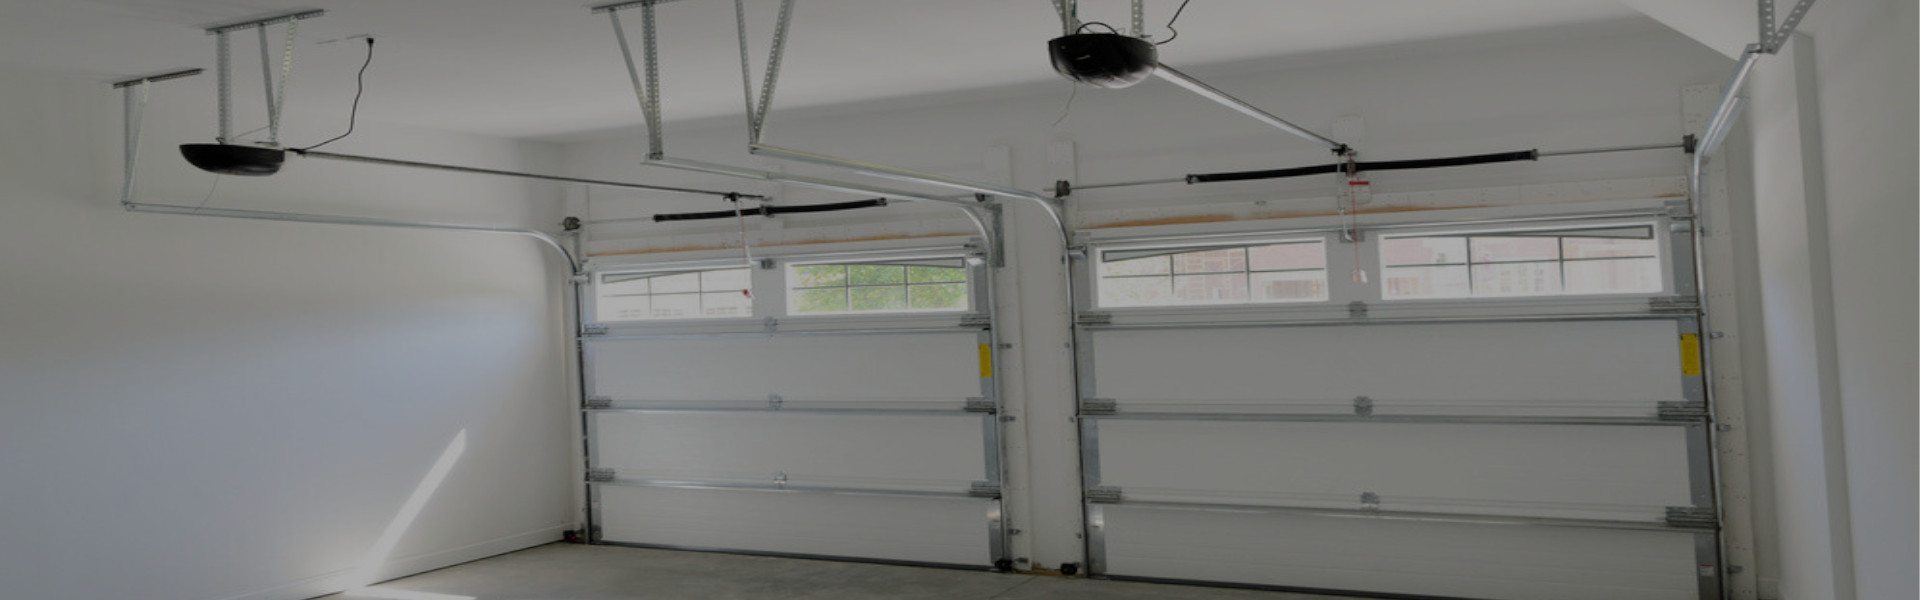 Slider Garage Door Repair, Glaziers in Molesey, East Molesey, West Molesey, KT8